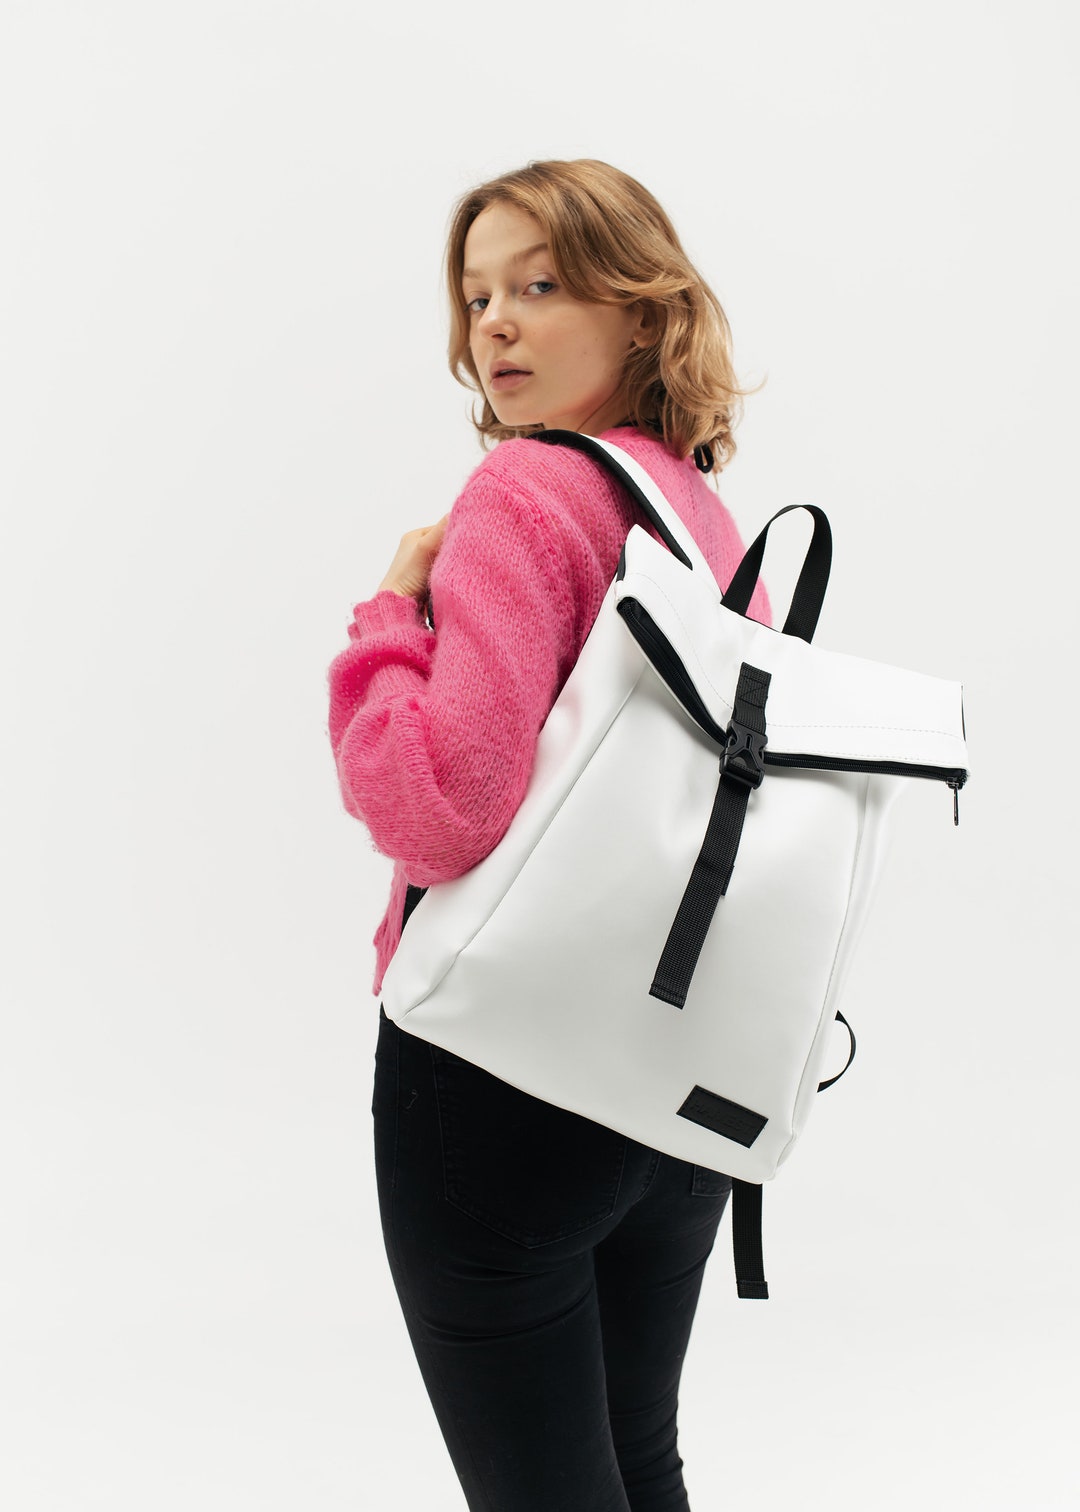 Roll Top Travel Rucksack White Day Pack Laptop Bag for Women - Etsy